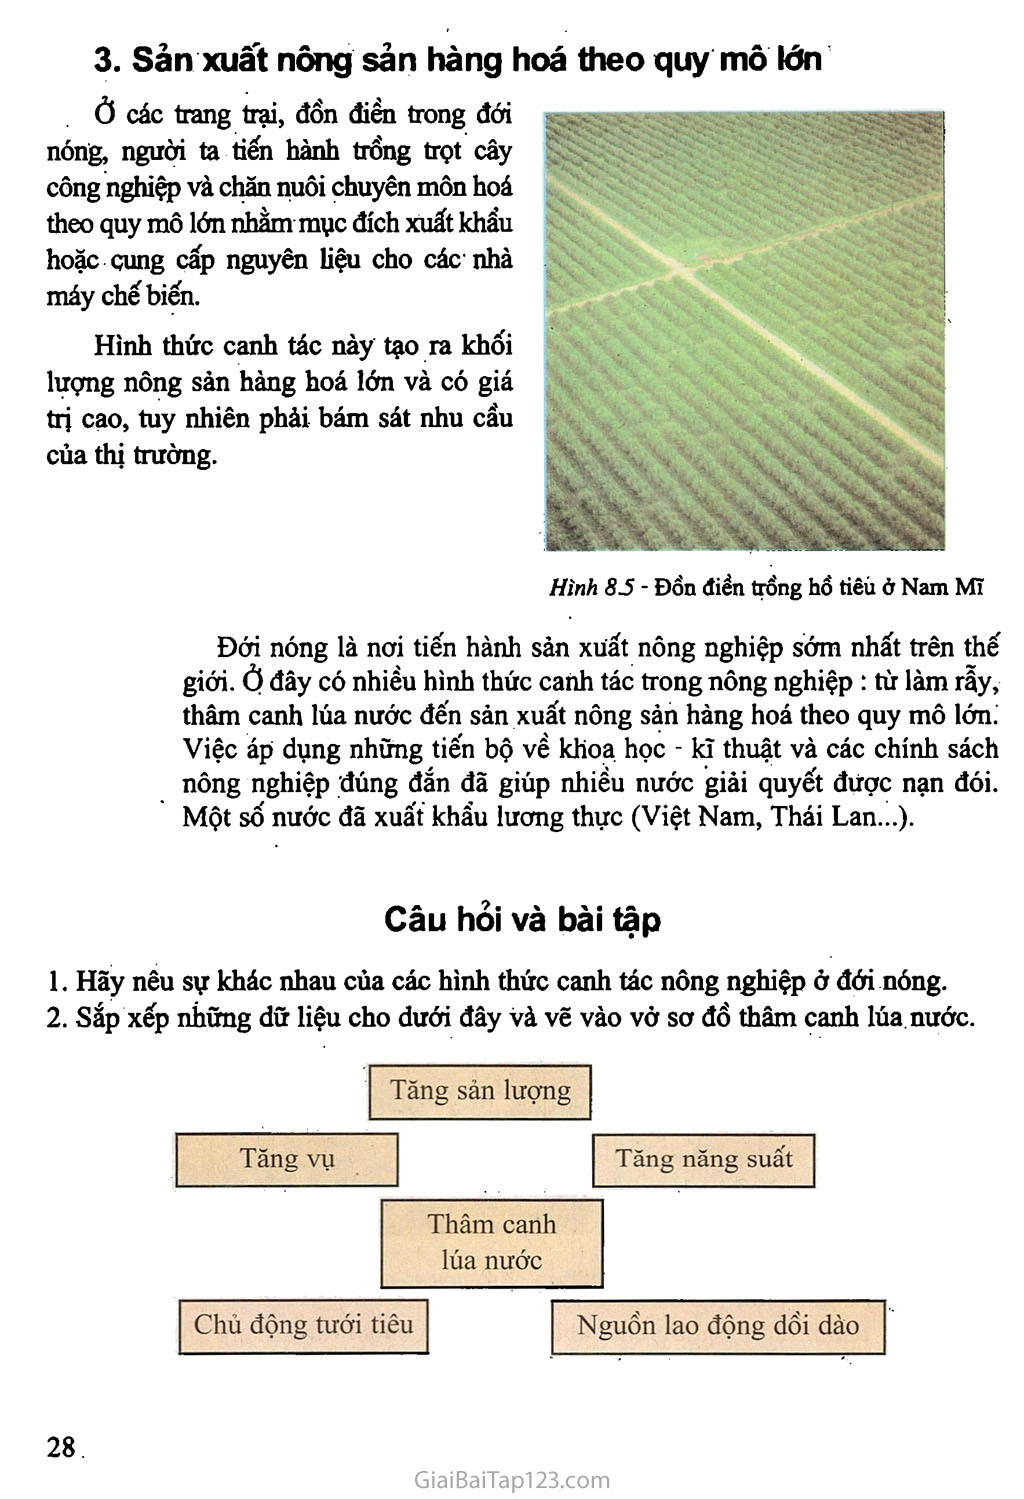 Bài 8: Các hình thức canh tác trong nông nghiệp ở đới nóng trang 3